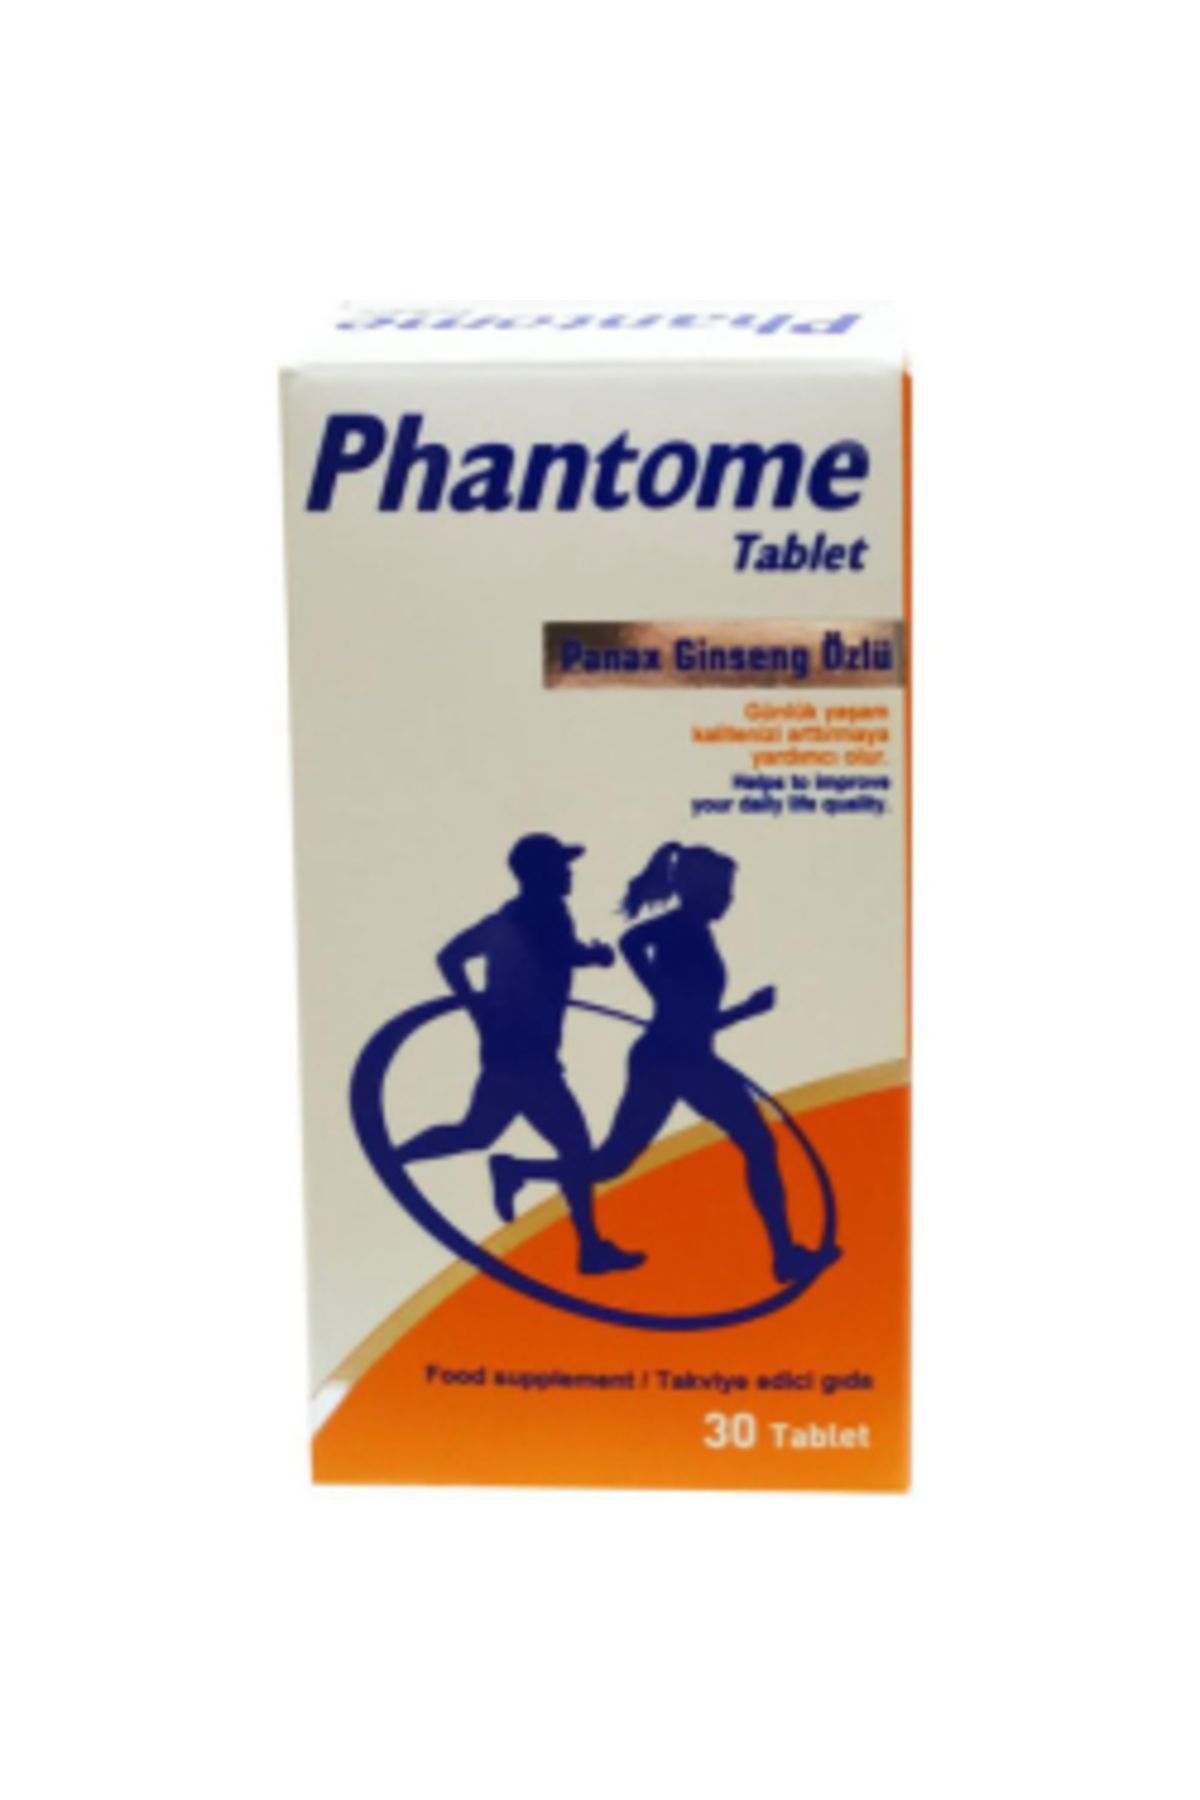 Phantome Panax Ginseng Özlü 30 Tablet ( 1 ADET )